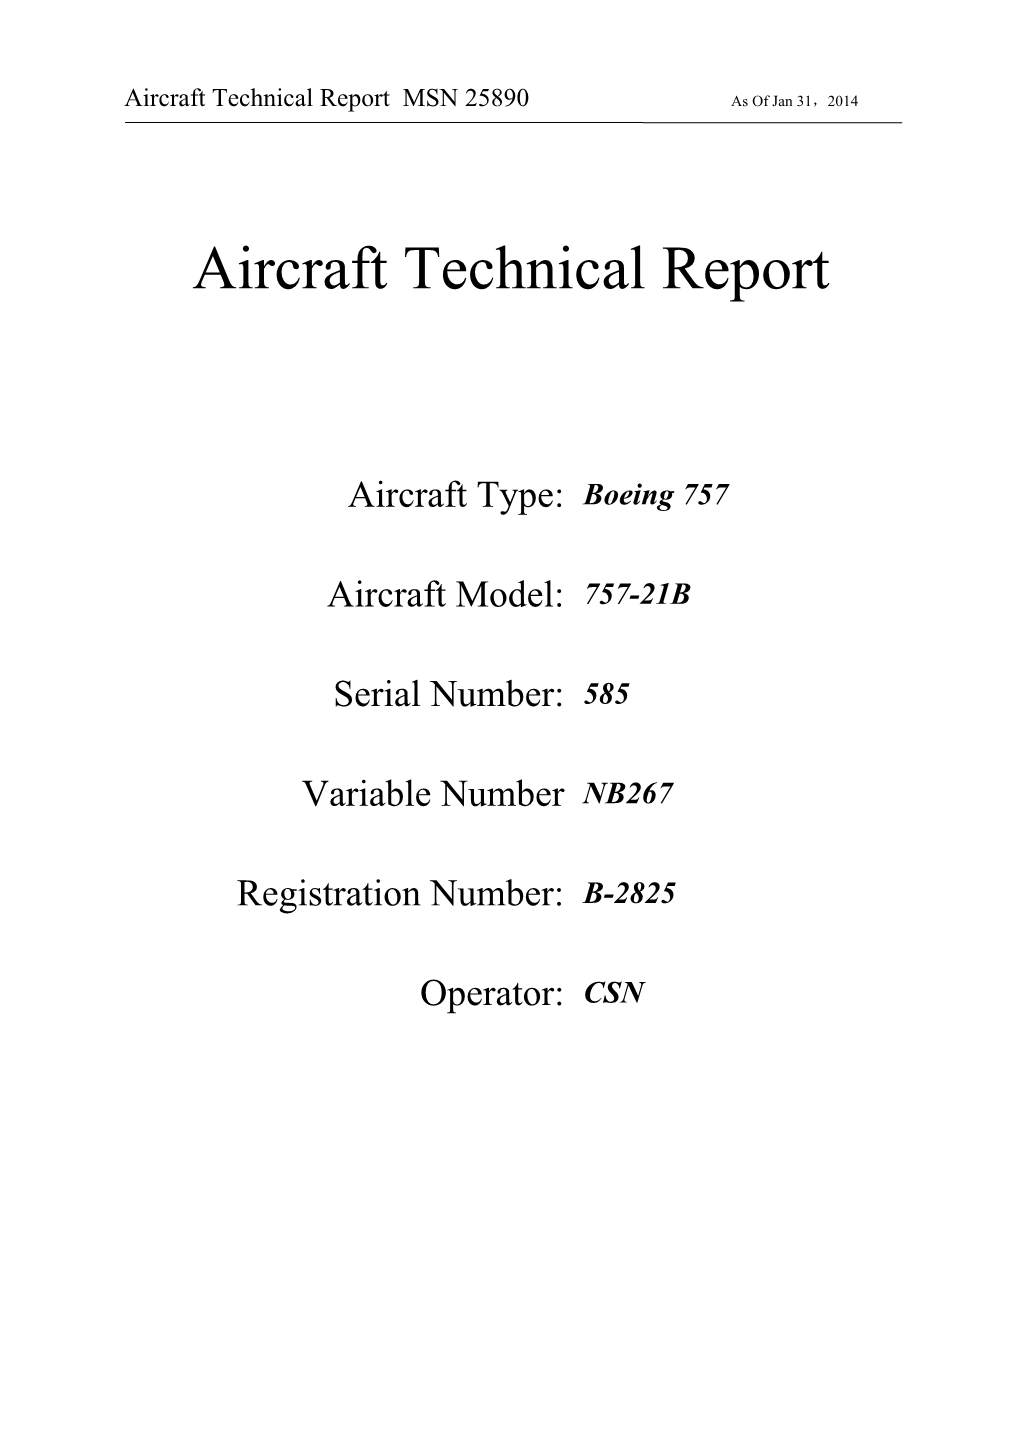 1 Aircraft History and Status